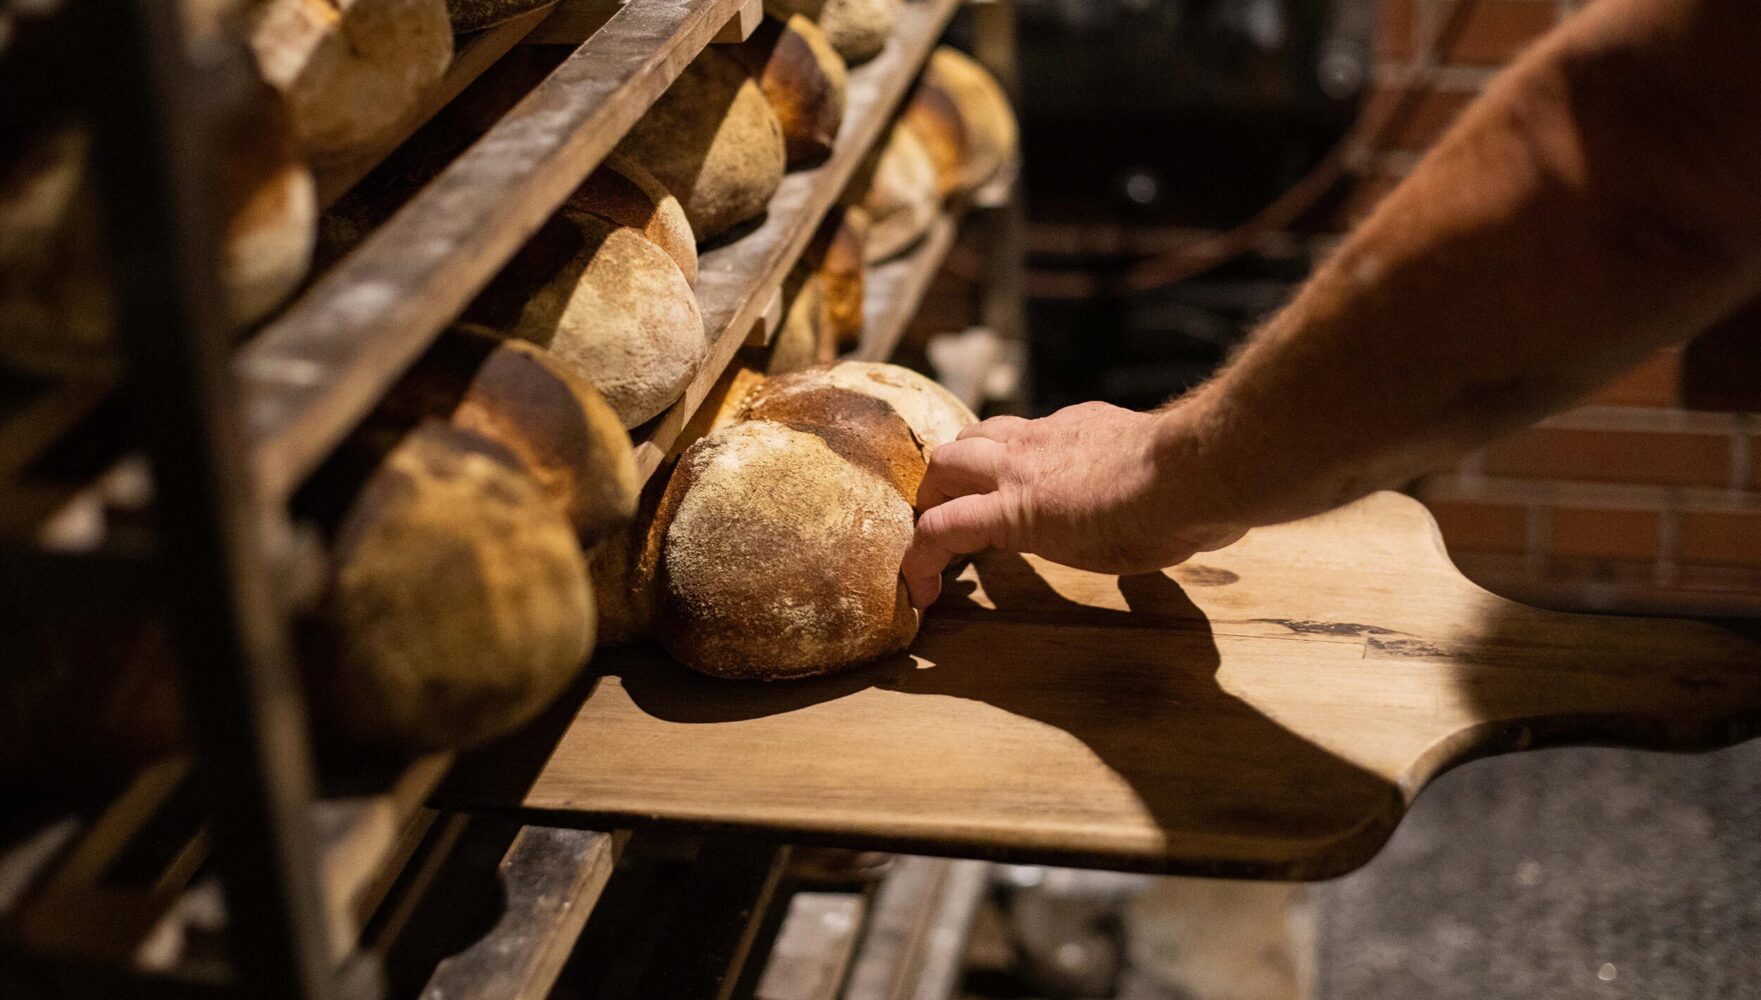 Sauerteigbrot, wie kann ich ein bekömmliches Brot selber machen?